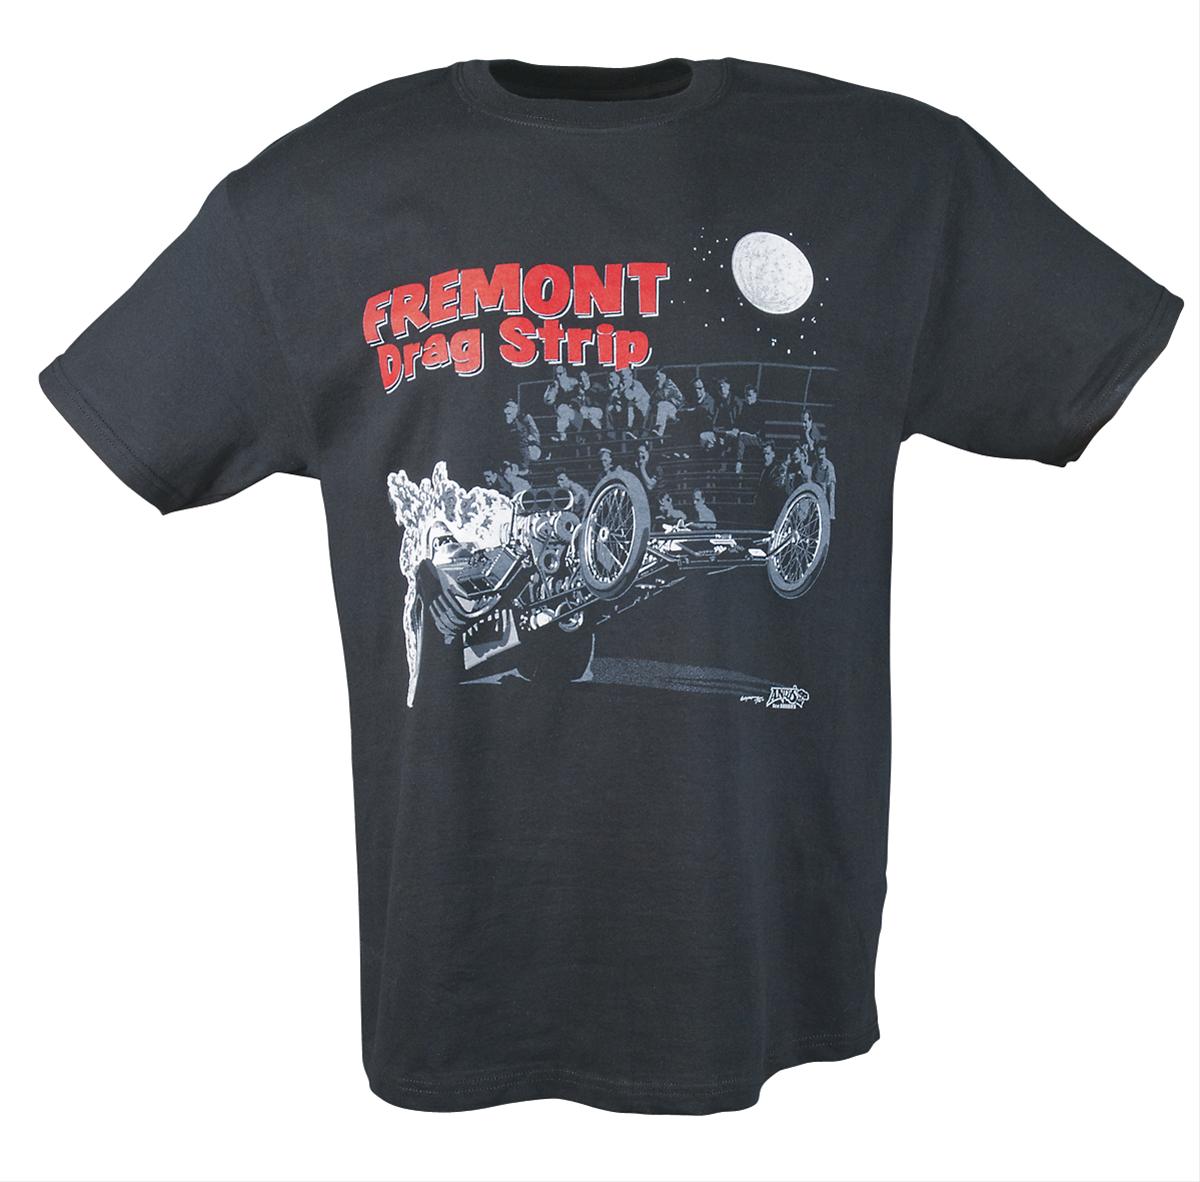 Andy's T's T-Shirt Cotton Fremont Drag Strip Black Large Each 9213L | eBay